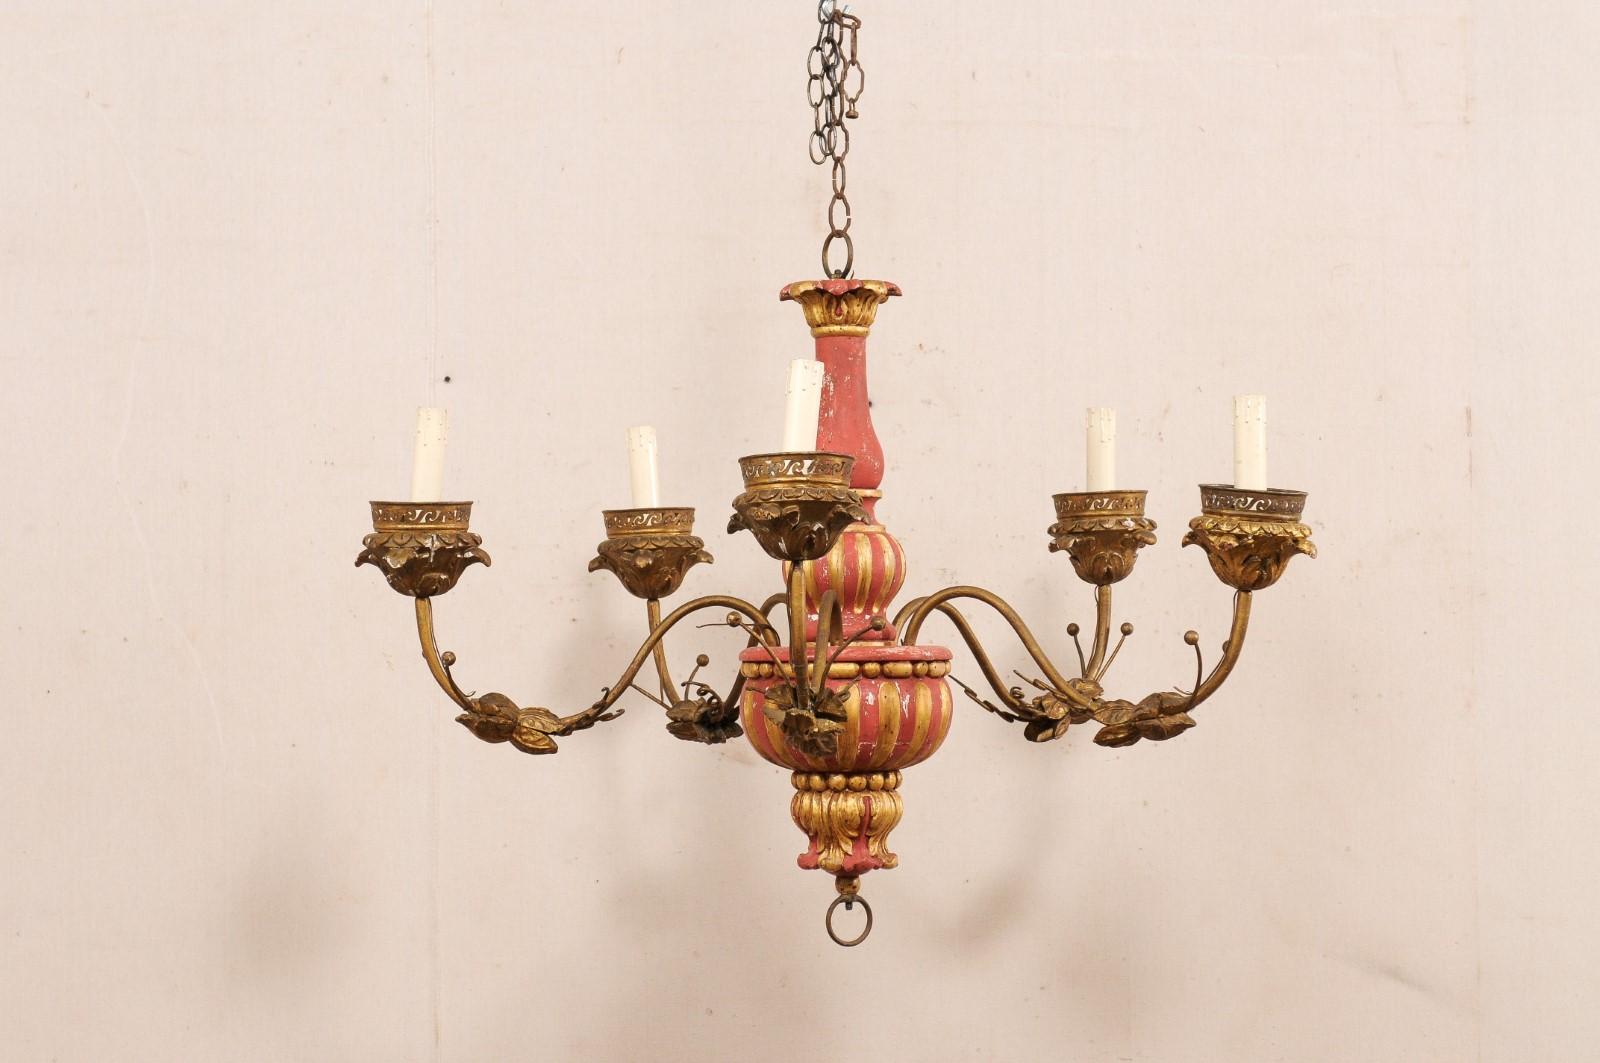 Lustre italien en bois peint avec des bras en métal, du début du 20e siècle. Ce lustre ancien d'Italie présente une colonne centrale en bois avec des détails perlés, cannelés et sculptés d'acanthes. Cinq bras fluides en forme de S s'élèvent et se